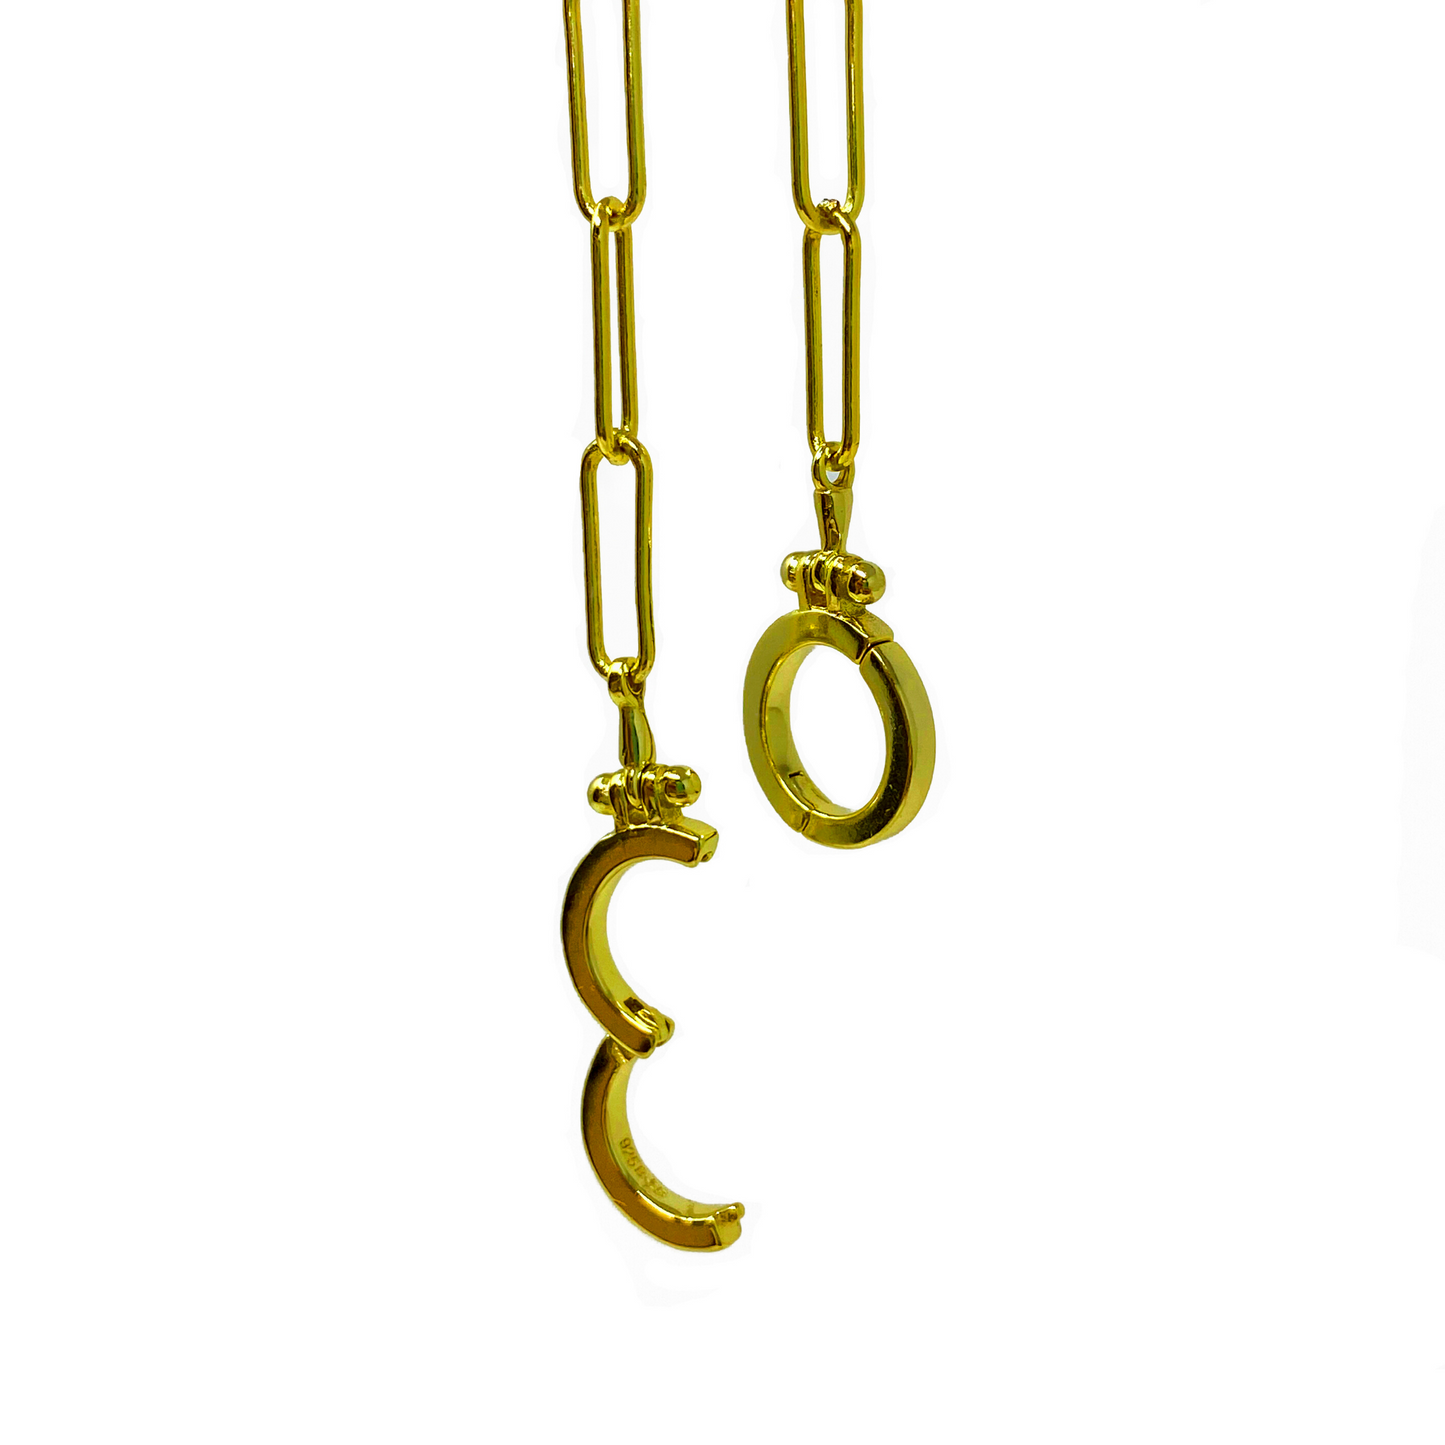 Confinement Paperclip Chain Necklace - Short